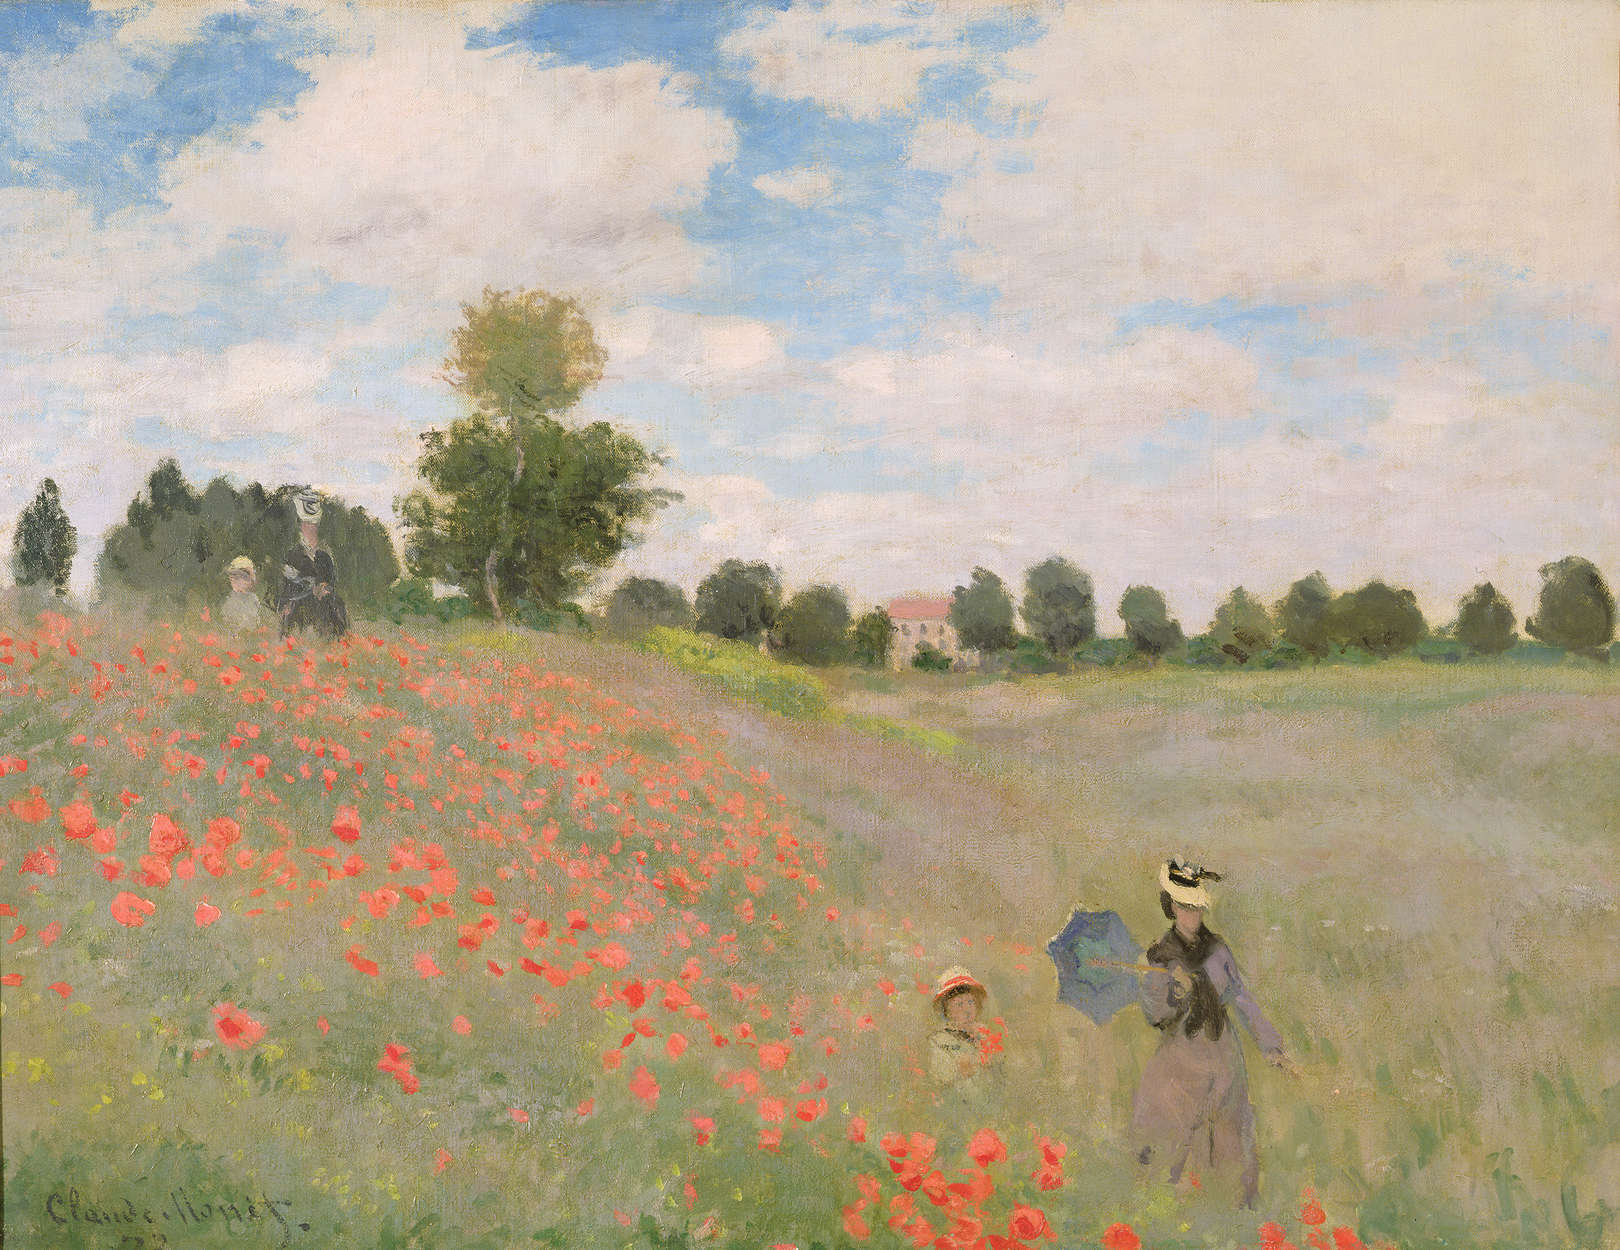             Wilde klaprozen" muurschildering van Claude Monet
        